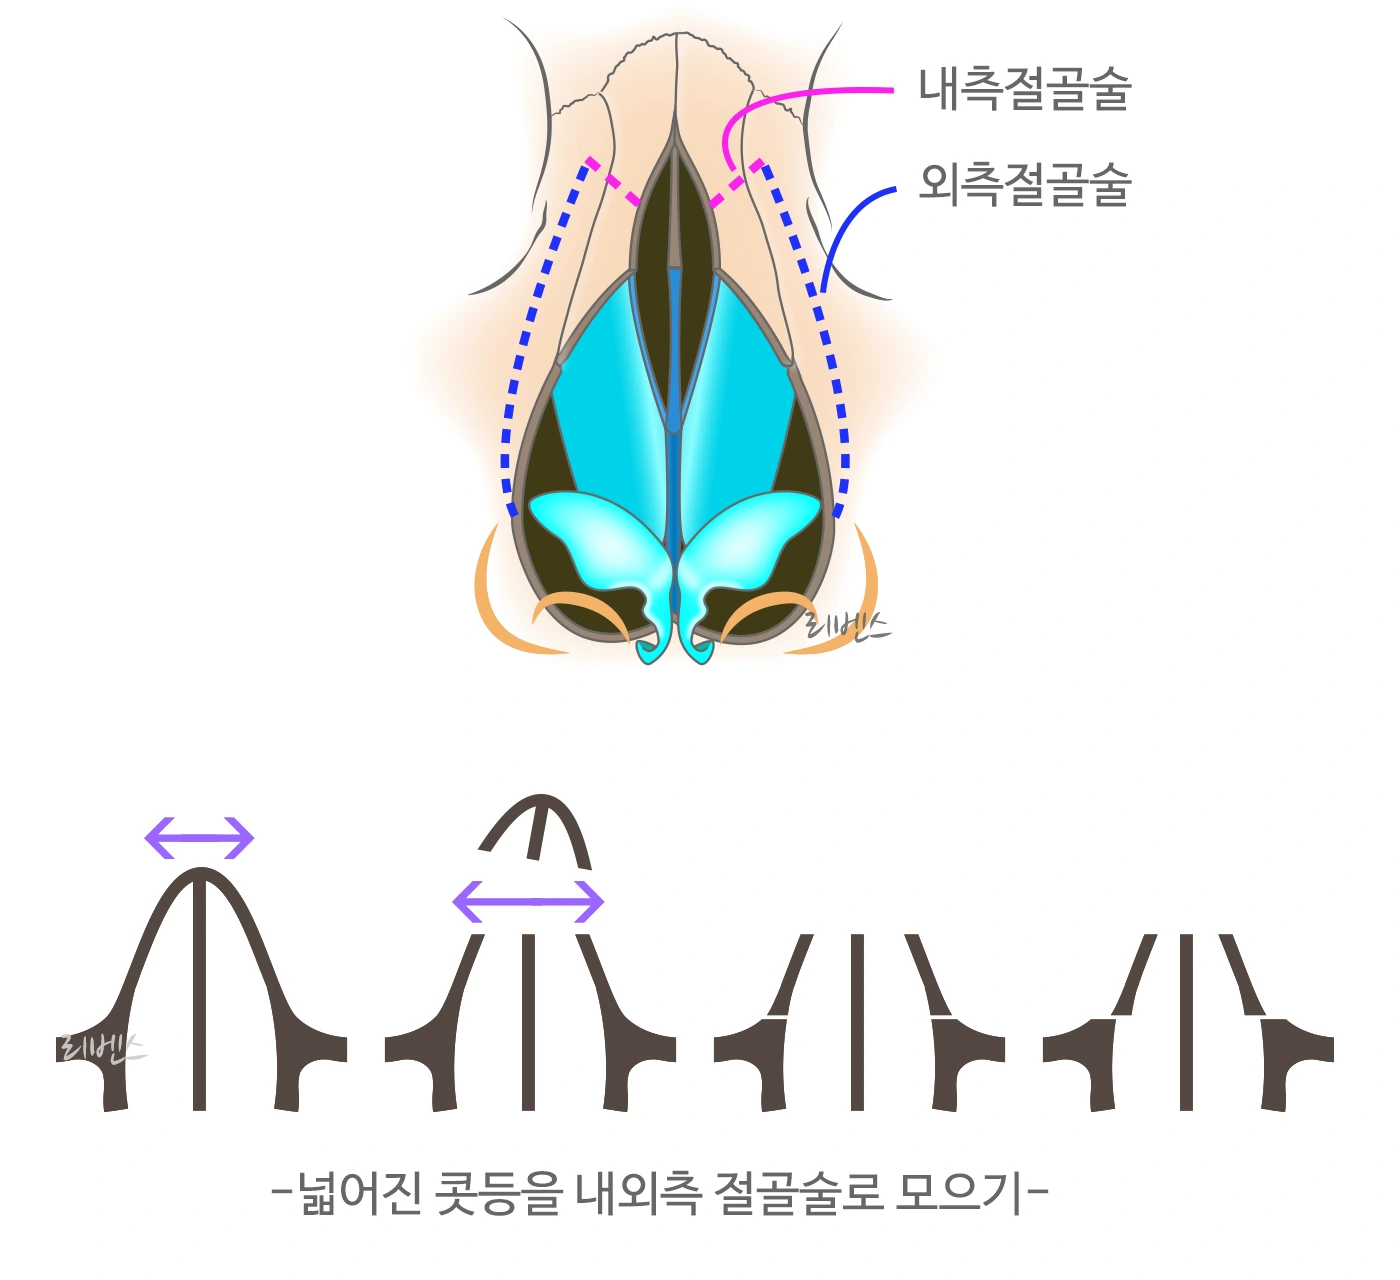 매부리코 코뼈 내측 외측 내외측 절골